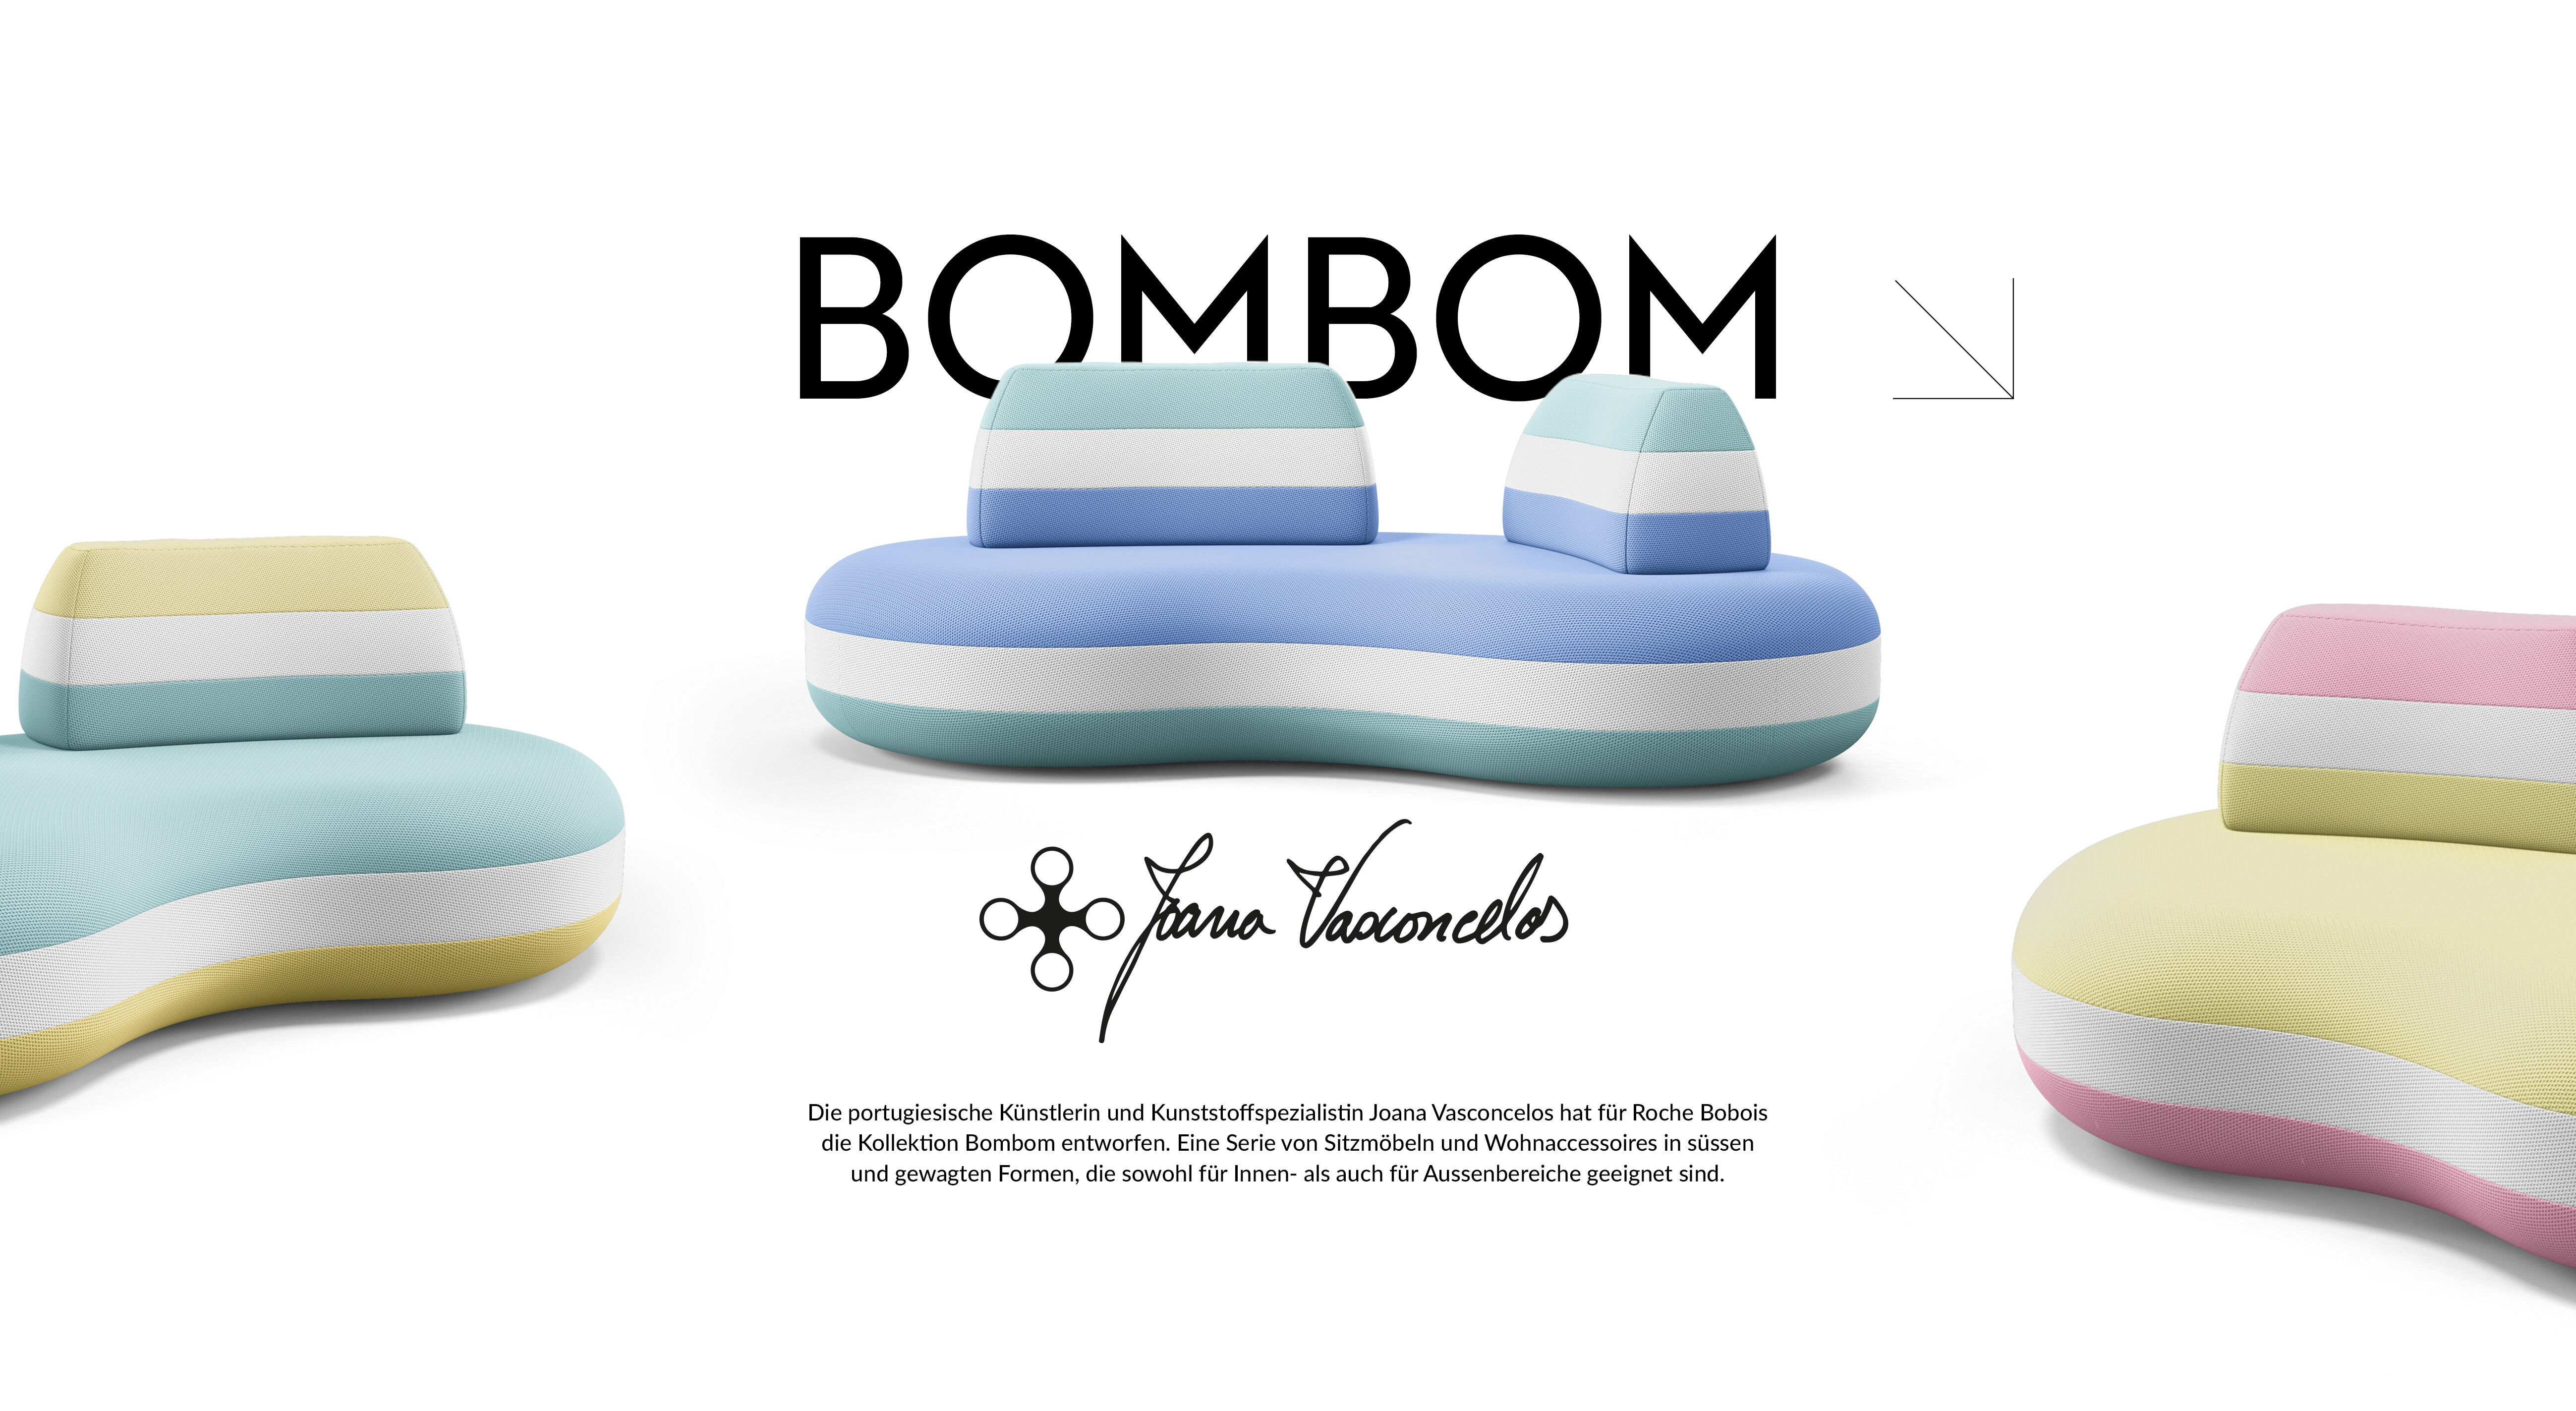 Die portugiesische Künstlerin und Kunststoffspezialistin Joana Vasconcelos hat für Roche Bobois die Kollektion Bombom entworfen. Eine Serie von Sitzmöbeln und Wohnaccessoires in süssen und gewagten Formen, die sowohl für Innen- als auch für Aussenbereiche geeignet sind. 